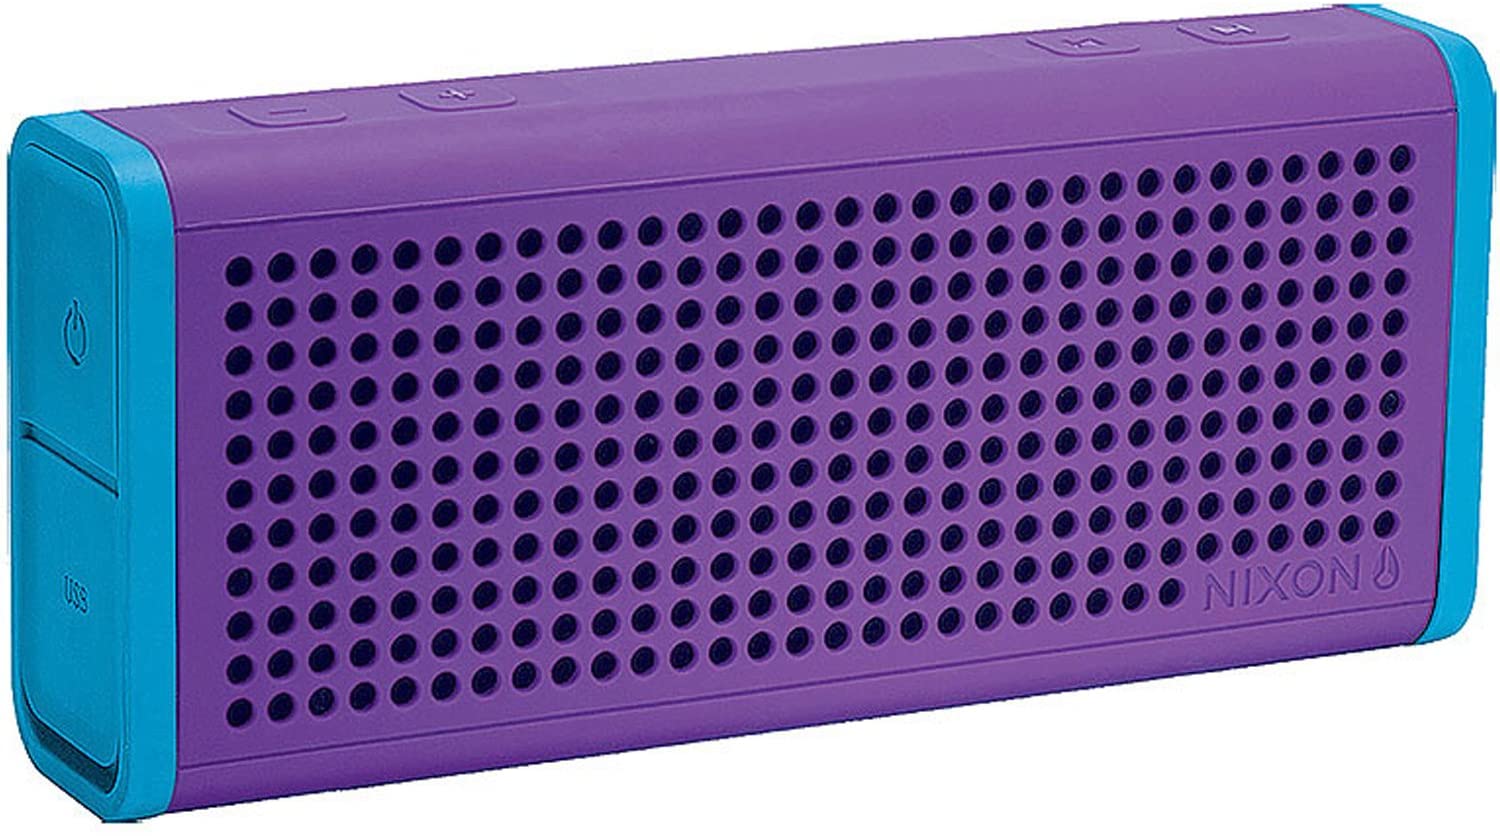 Nixon Blaster Bluetooth Speaker Purple/Sky